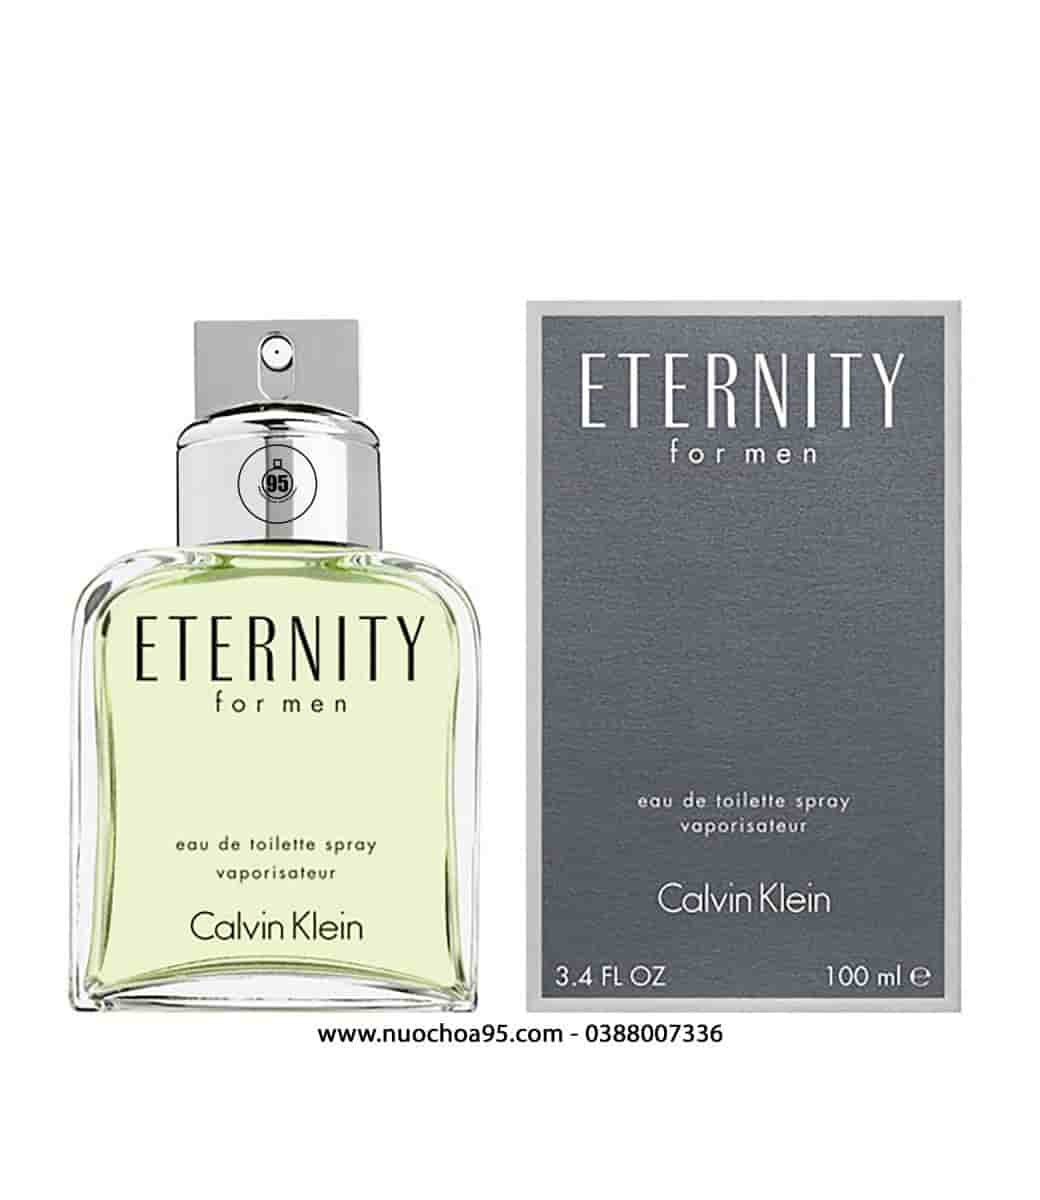 Mua Nước Hoa Calvin Klein Eternity Aqua EDT 100ml cho Nam, chính hãng Mỹ,  Giá tốt